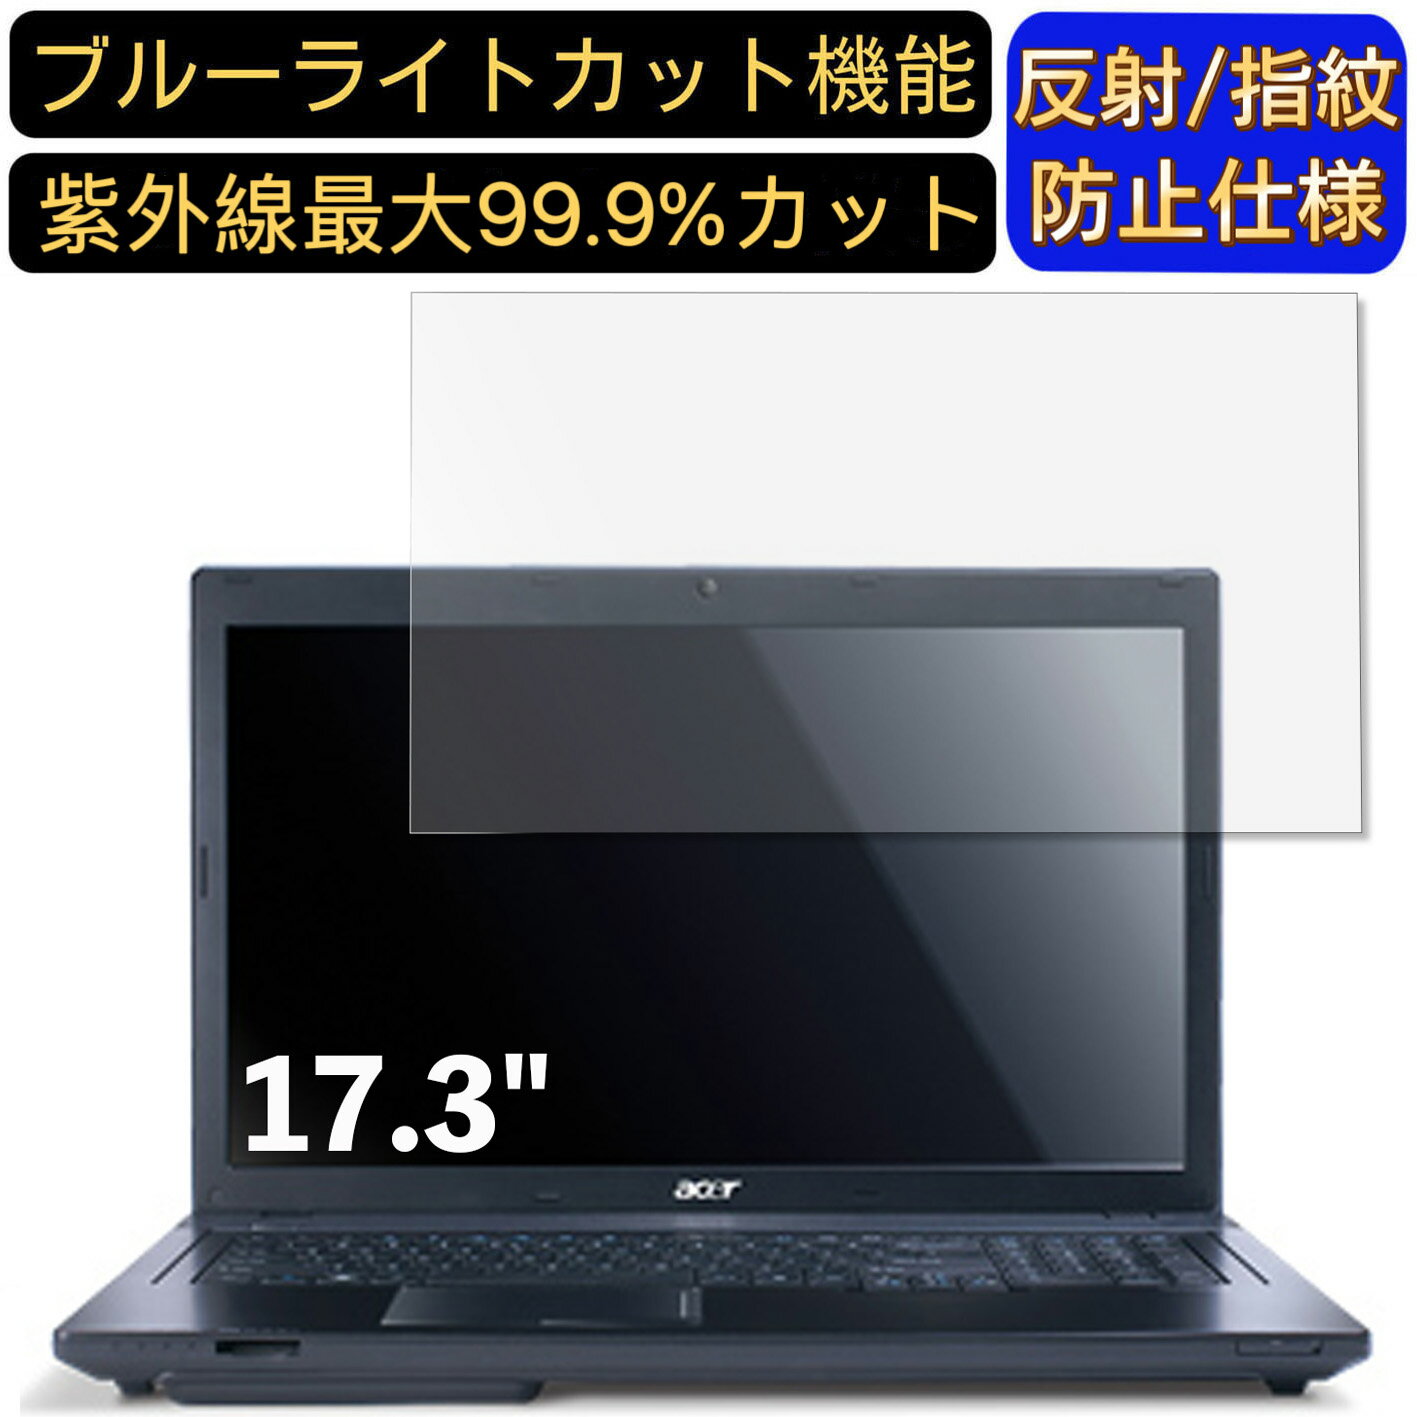 【ポイント2倍】Acer TravelMate 7750 17.3